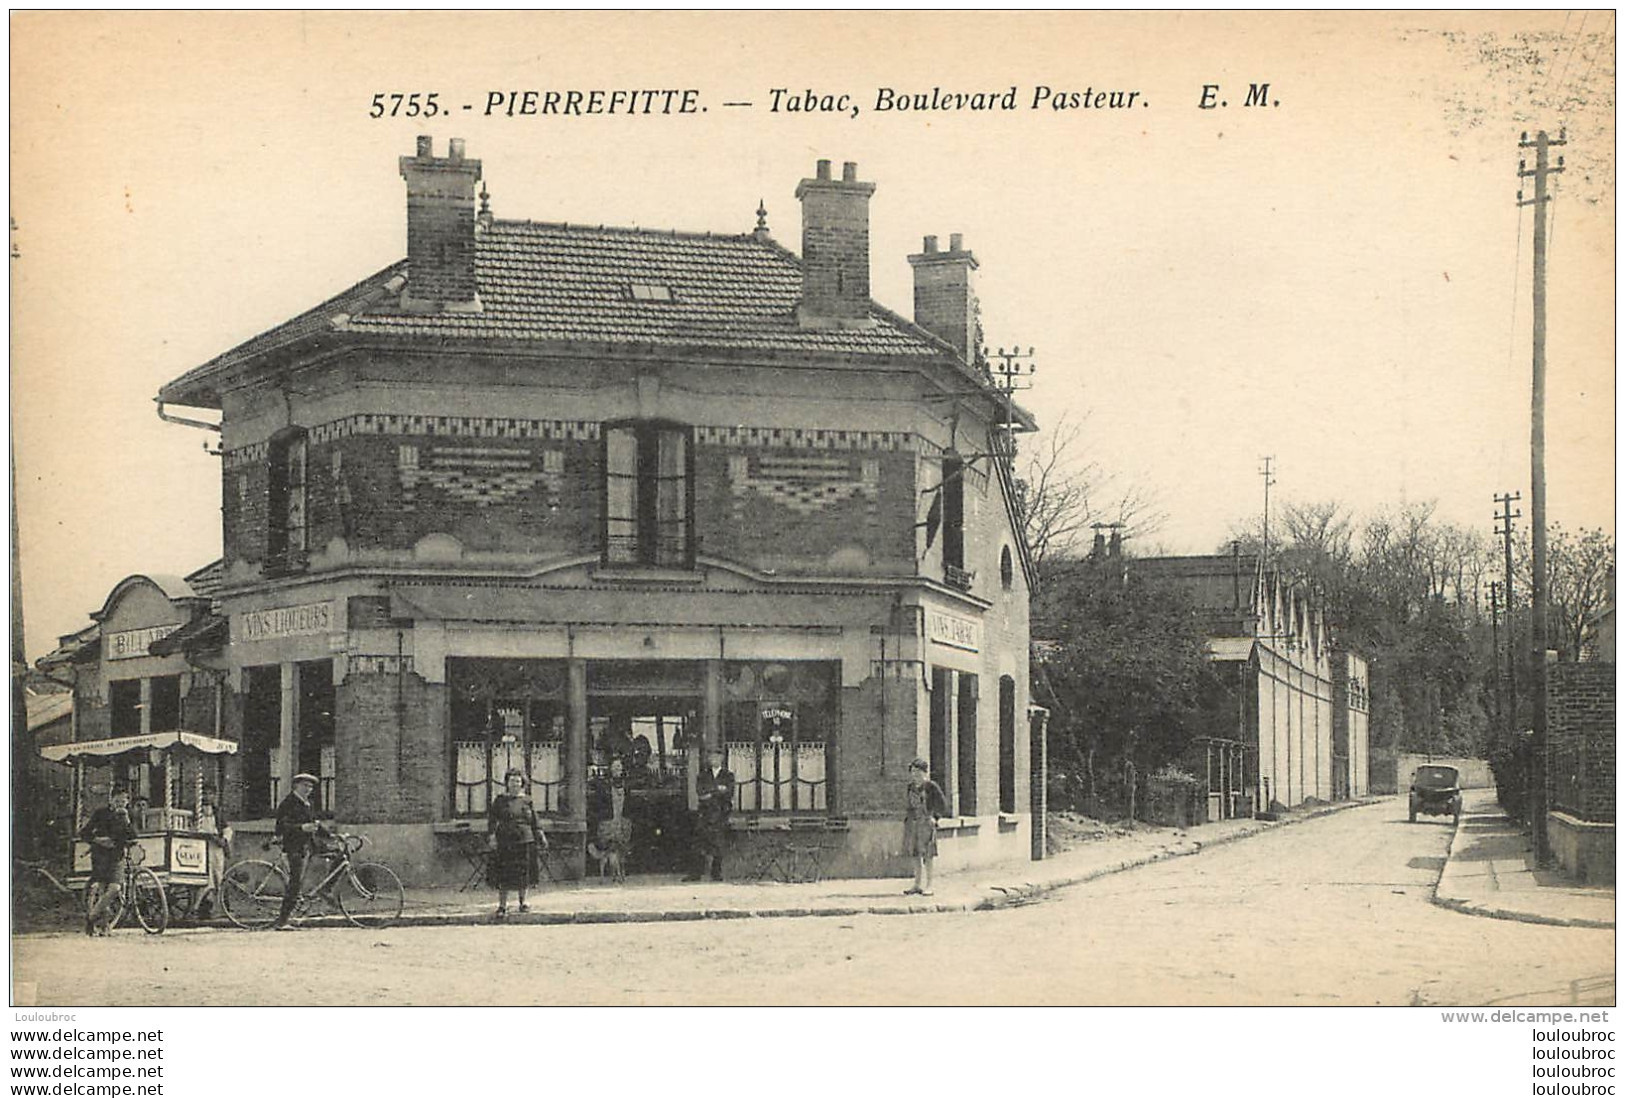 PIERREFITTE TABAC BOULEVARD PASTEUR EDITION E.M. - Pierrefitte Sur Seine